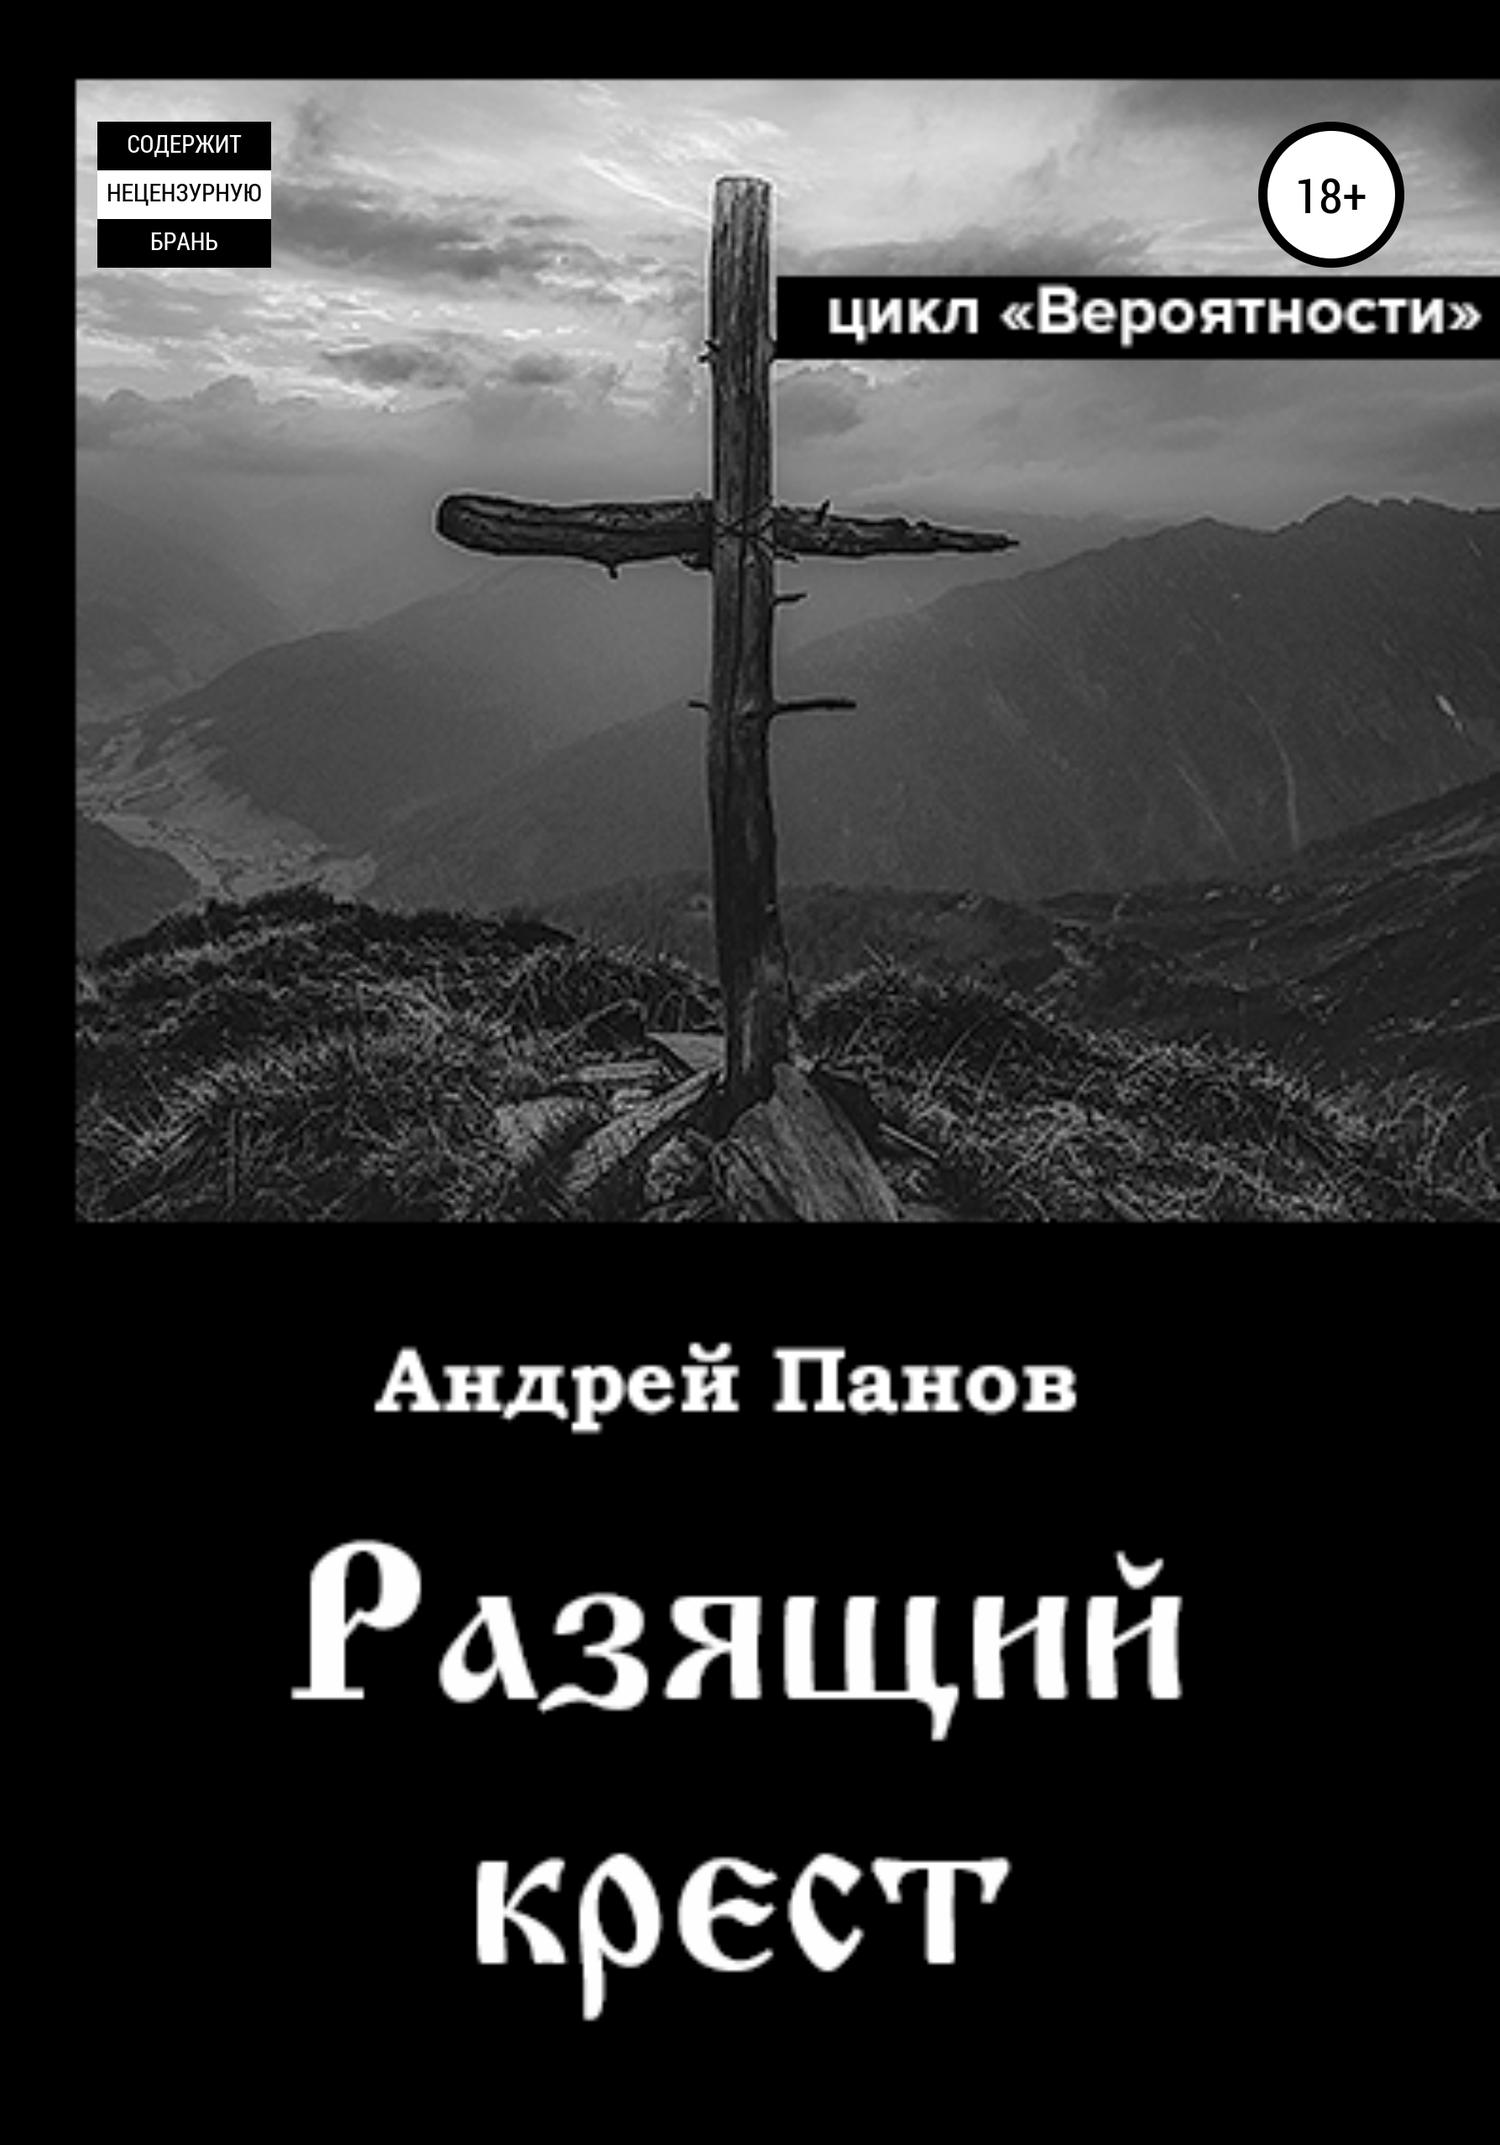 Вероятности. Разящий крест - Андрей Владимирович Панов